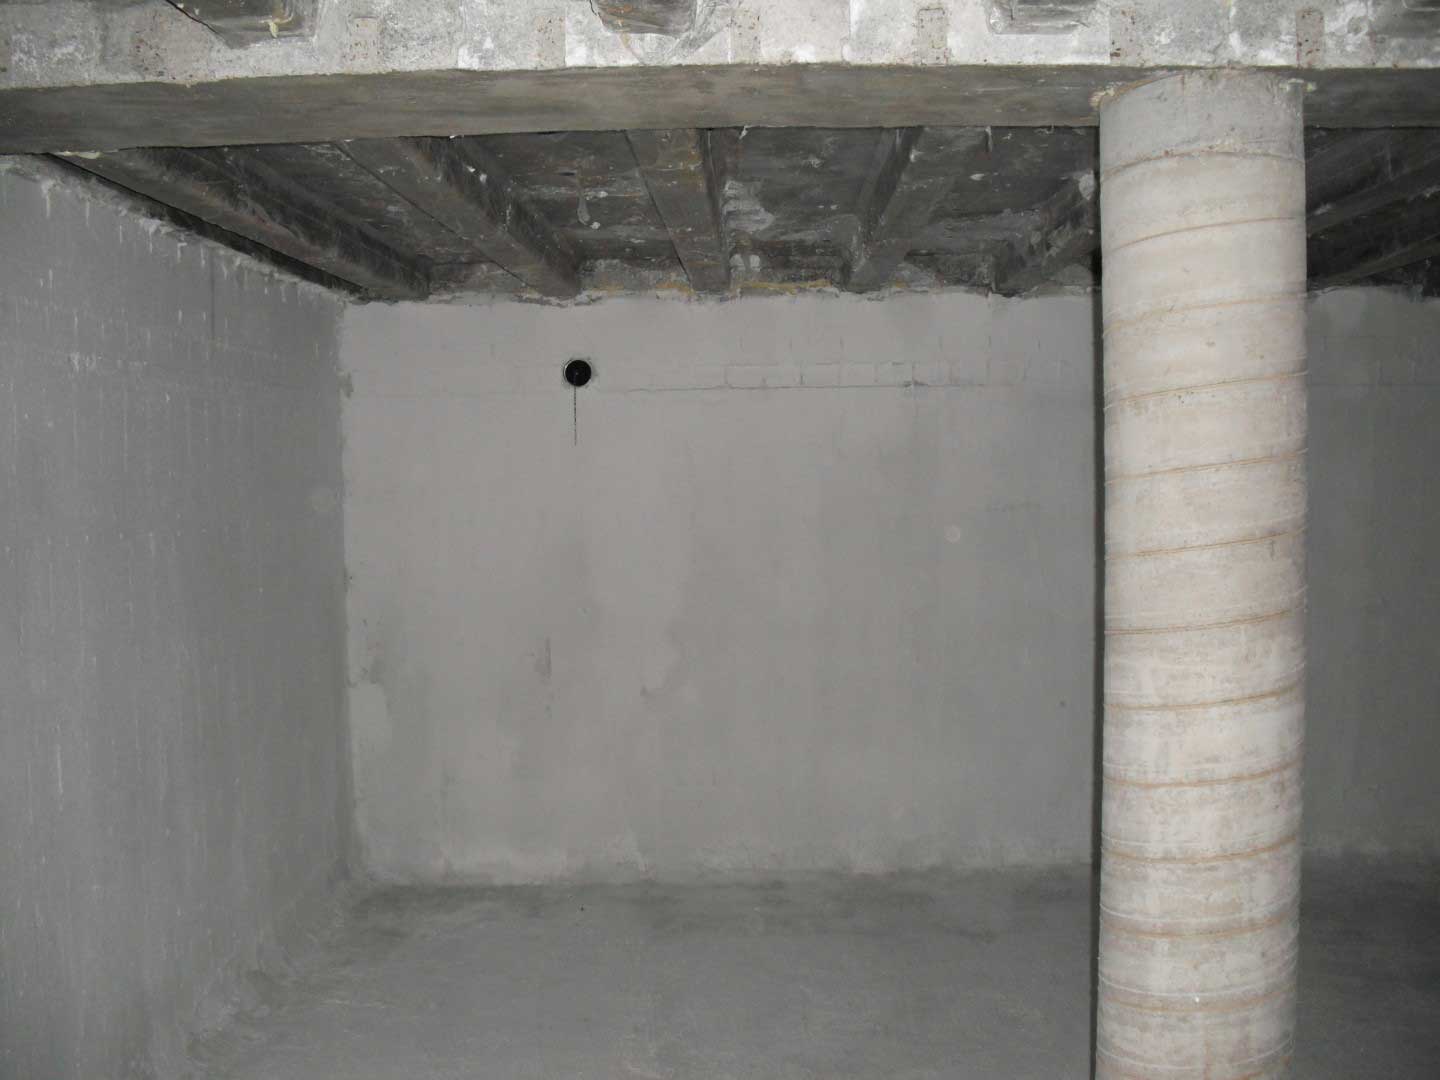 underground concrete cistern